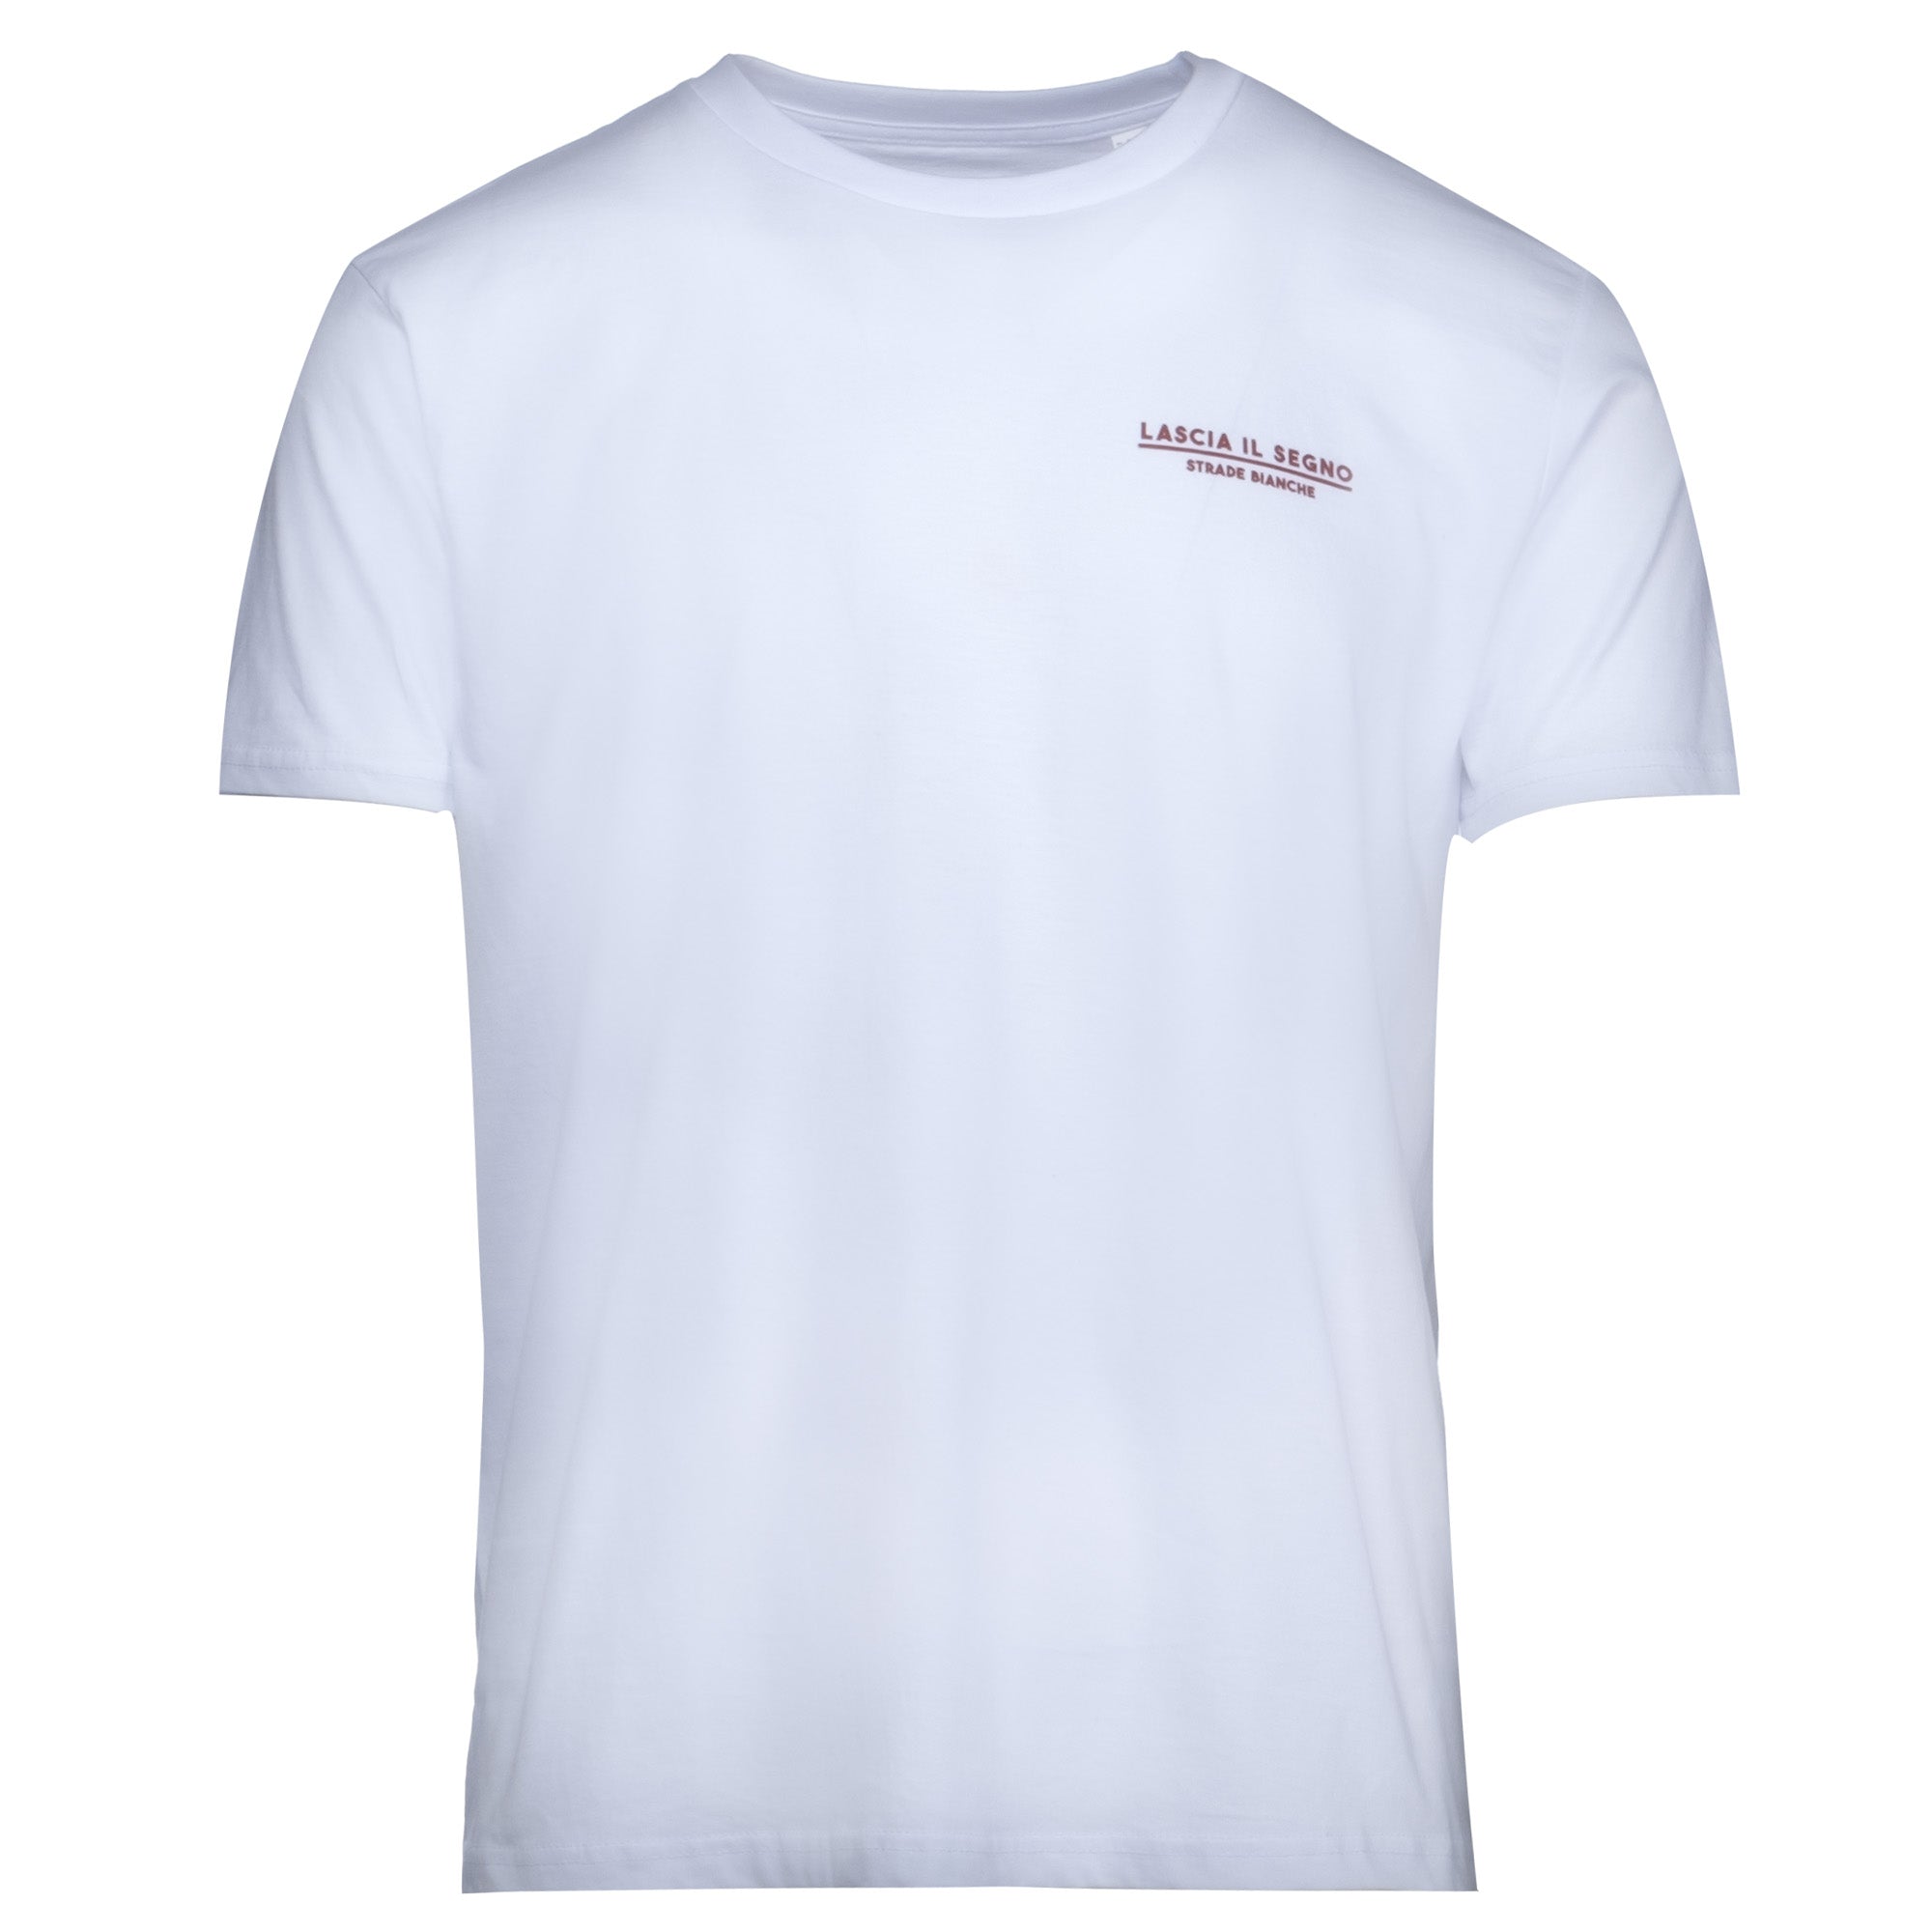 T-Shirt Strade Bianche - Lascia il segno